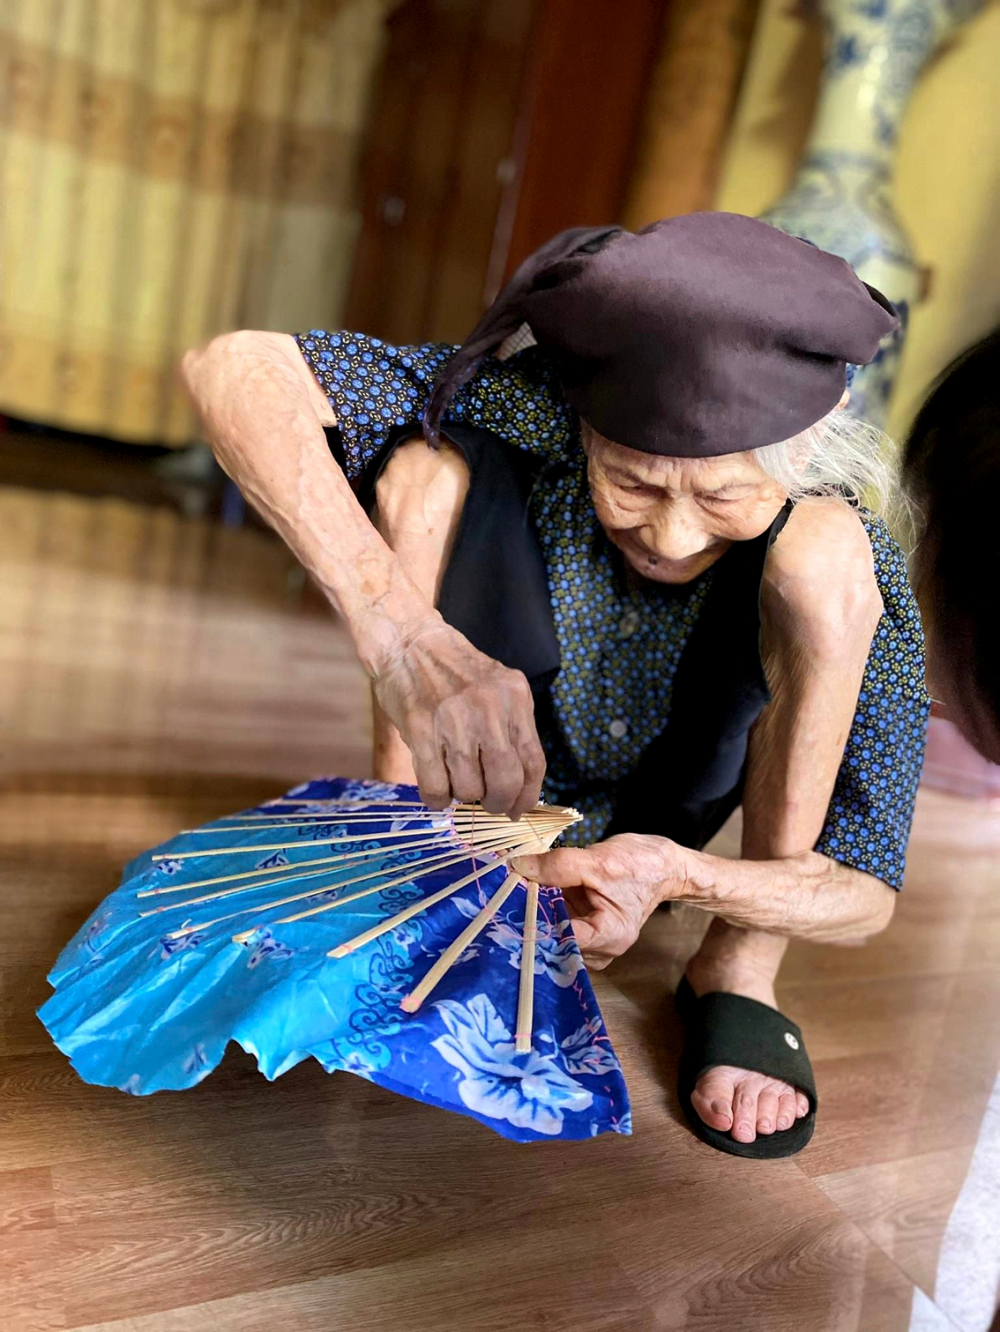 Bà Nghiên năm nay đã 102 tuổi. Bà vẫn khỏe, lúc rảnh vẫn thường ngồi khâu quạt giấy